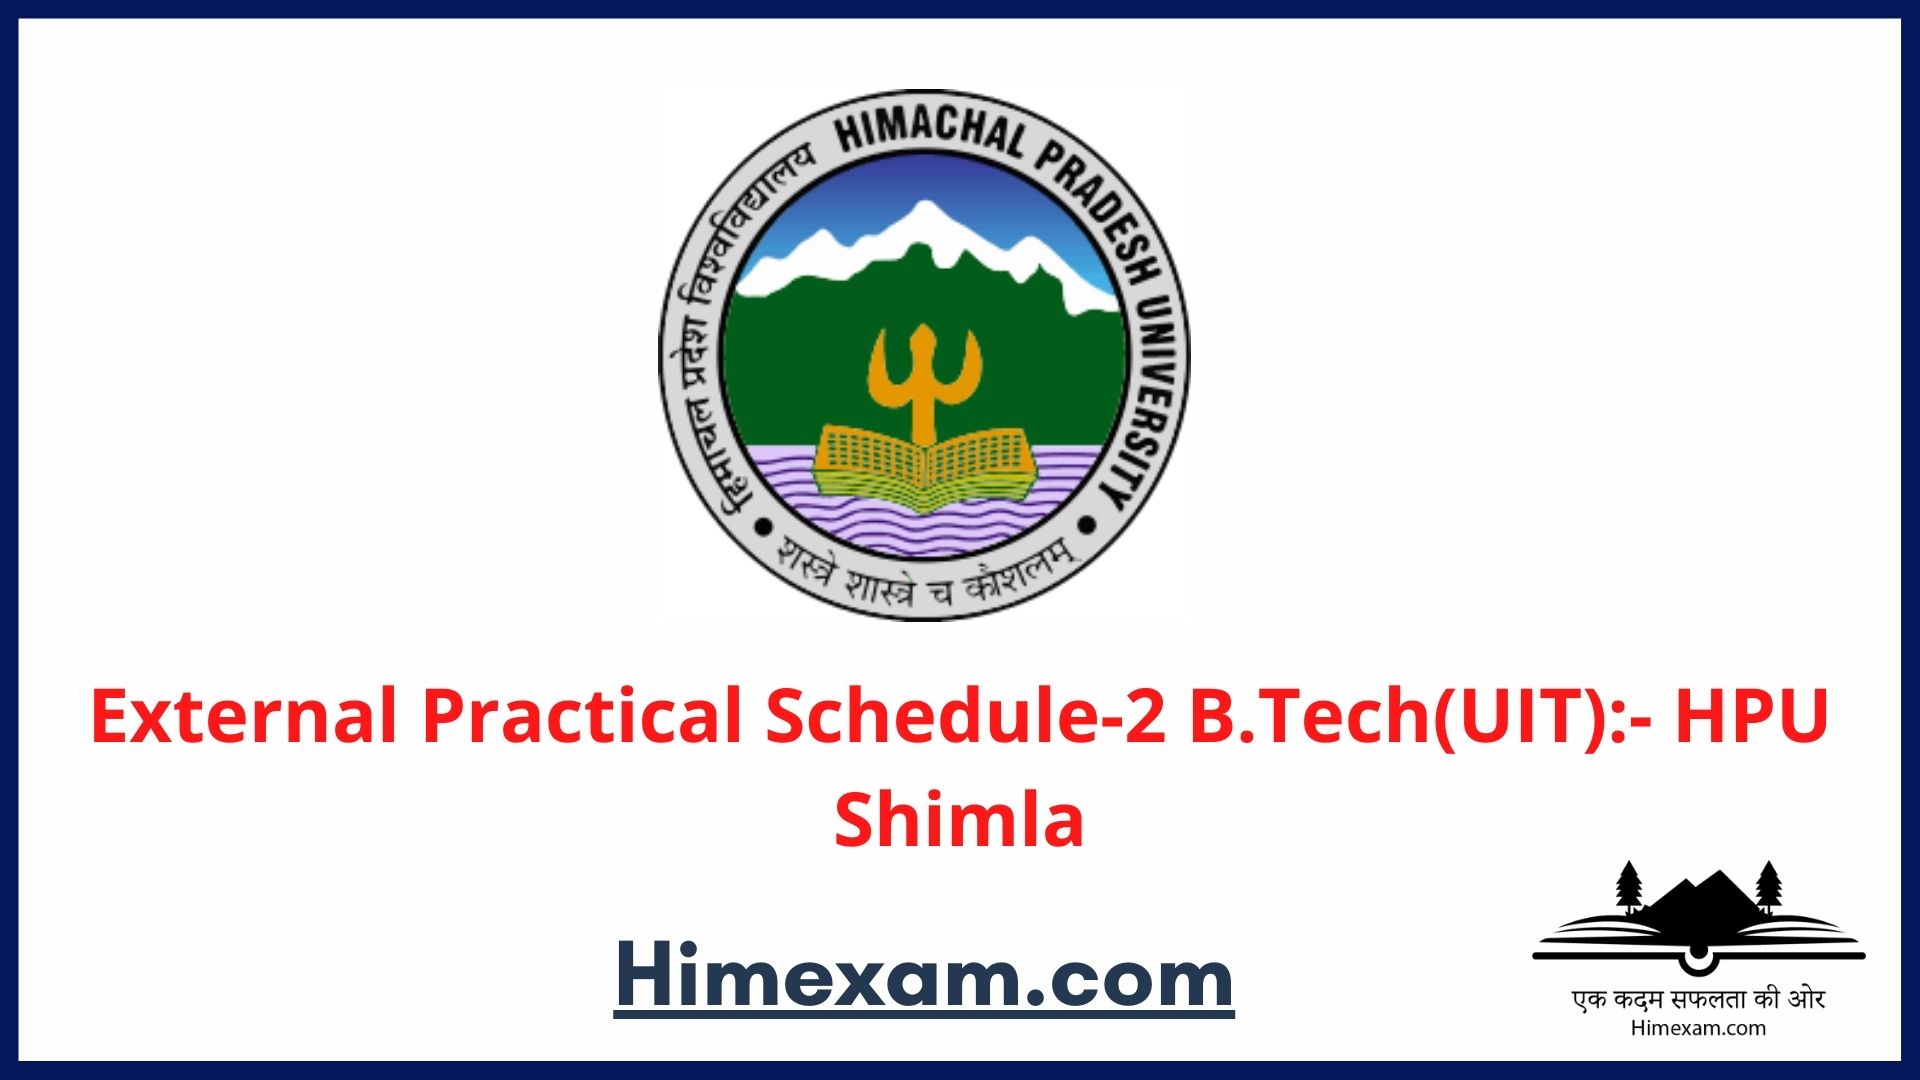 External Practical Schedule-2 B.Tech(UIT):- HPU Shimla